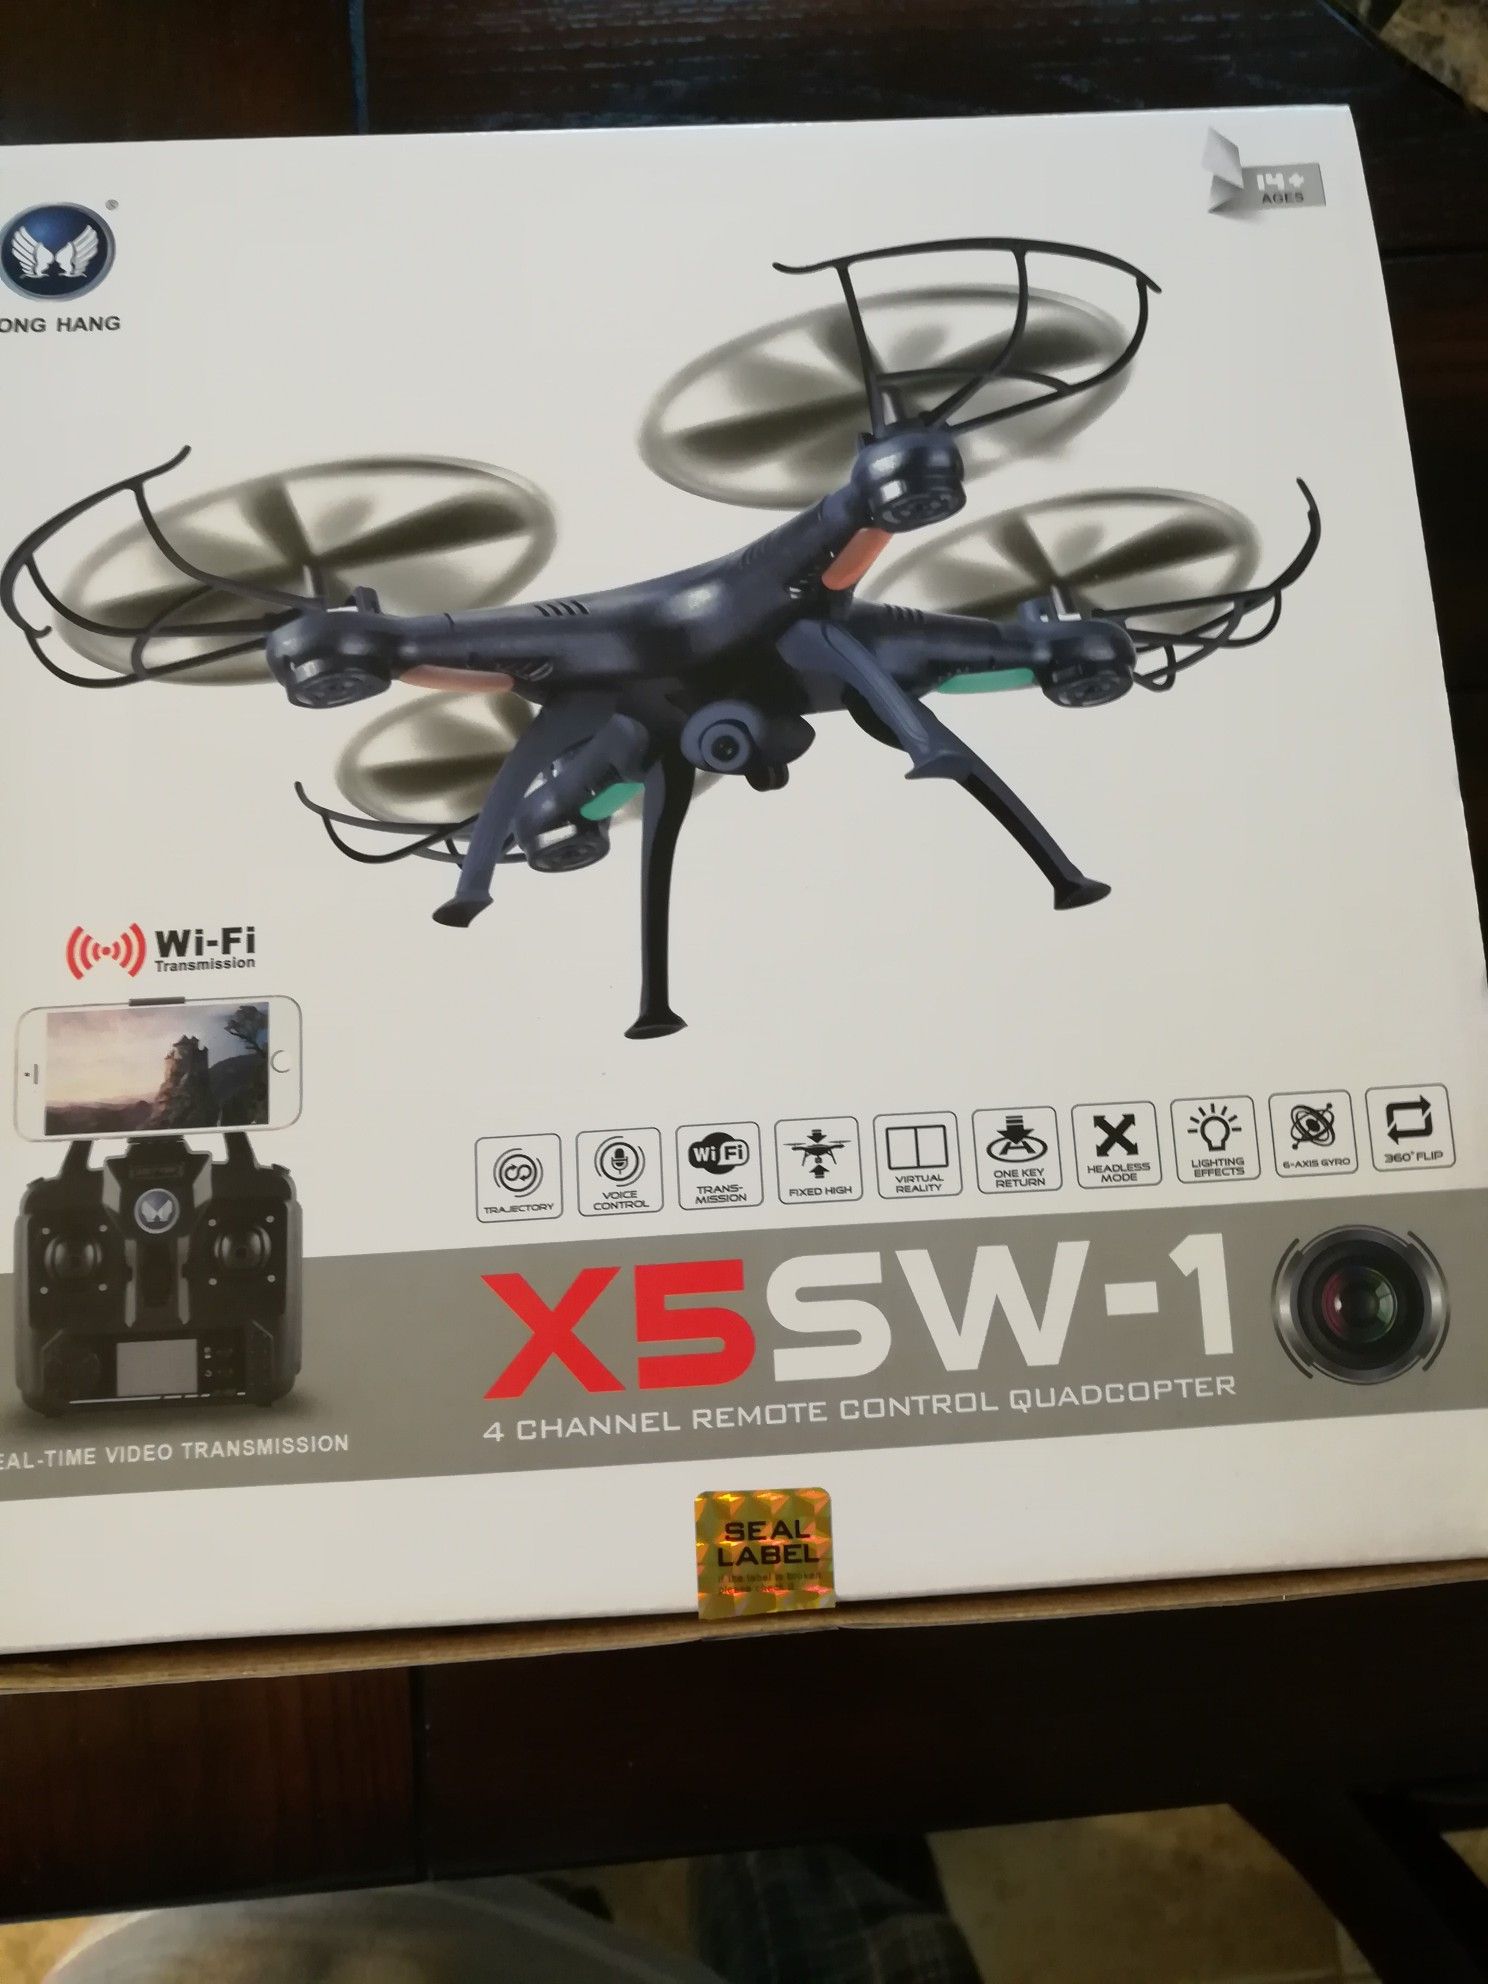 X5SW-1 DRONE